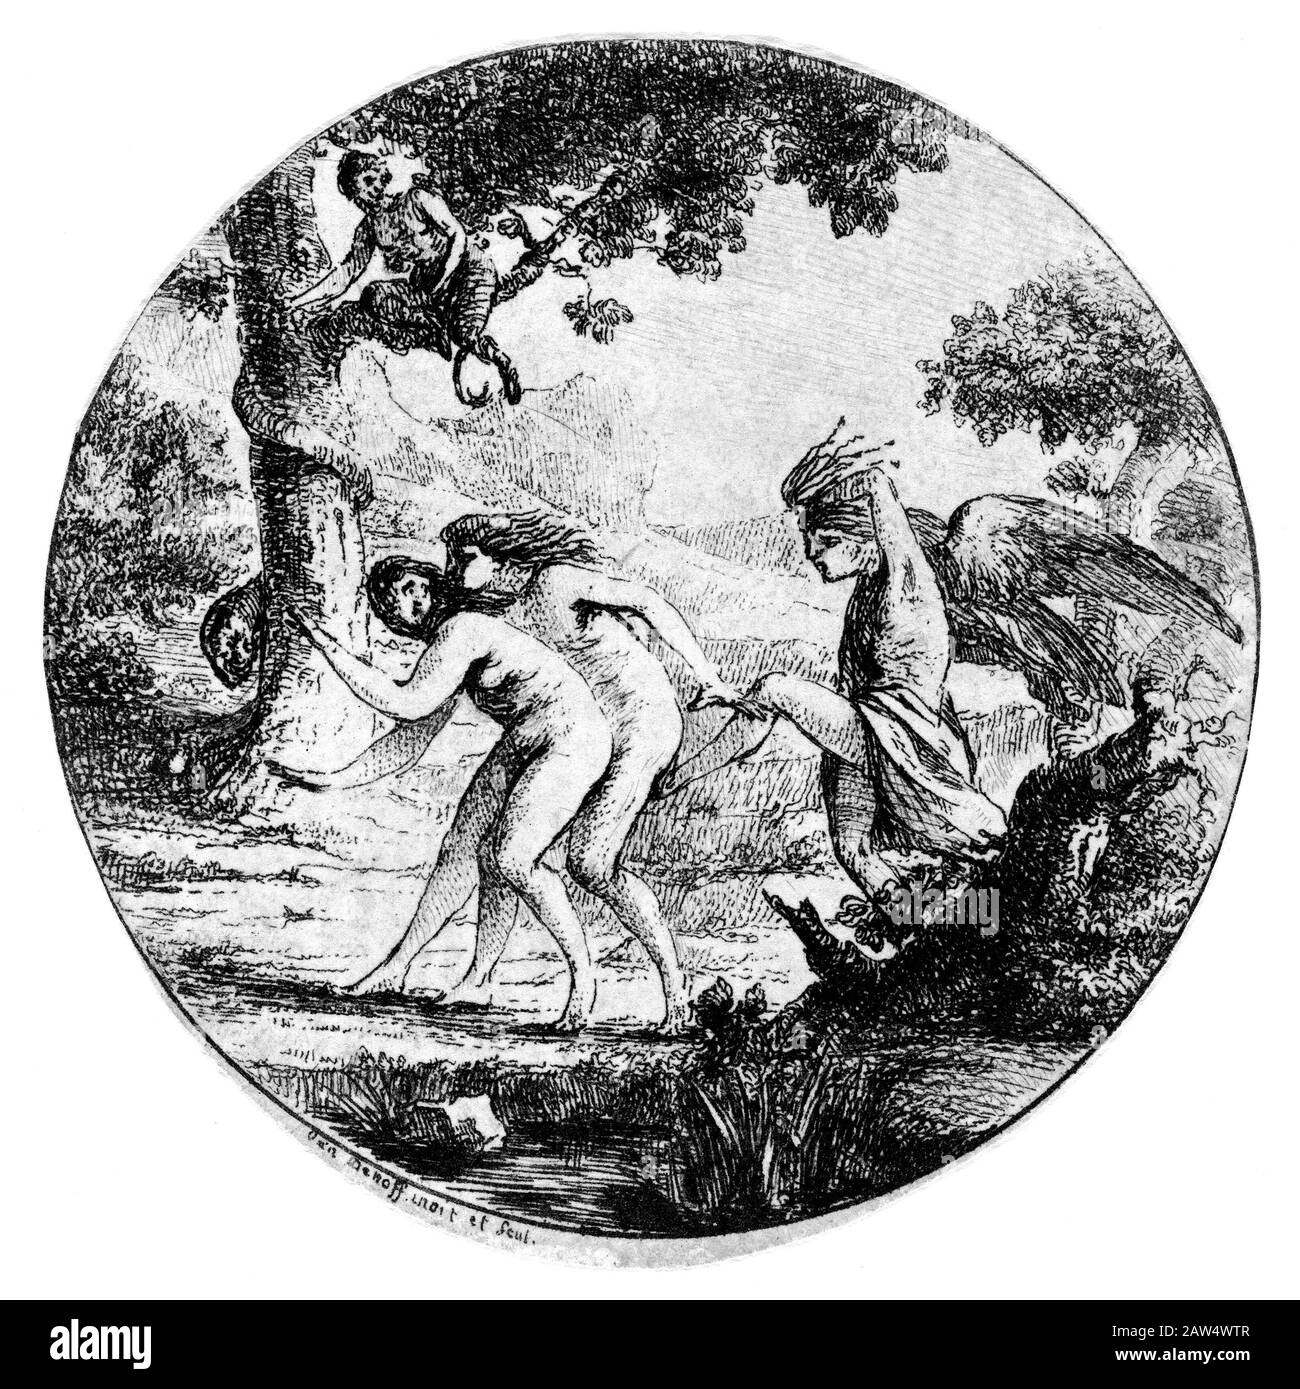 1770, FRANKREICH: Der französische Künstler, Schriftsteller, Diplomat, Autor und Archäologe DOMINIQUE VIVANT Baron DENON (* 1747; † um 182). Gravierte Grafik von Viv Stockfoto